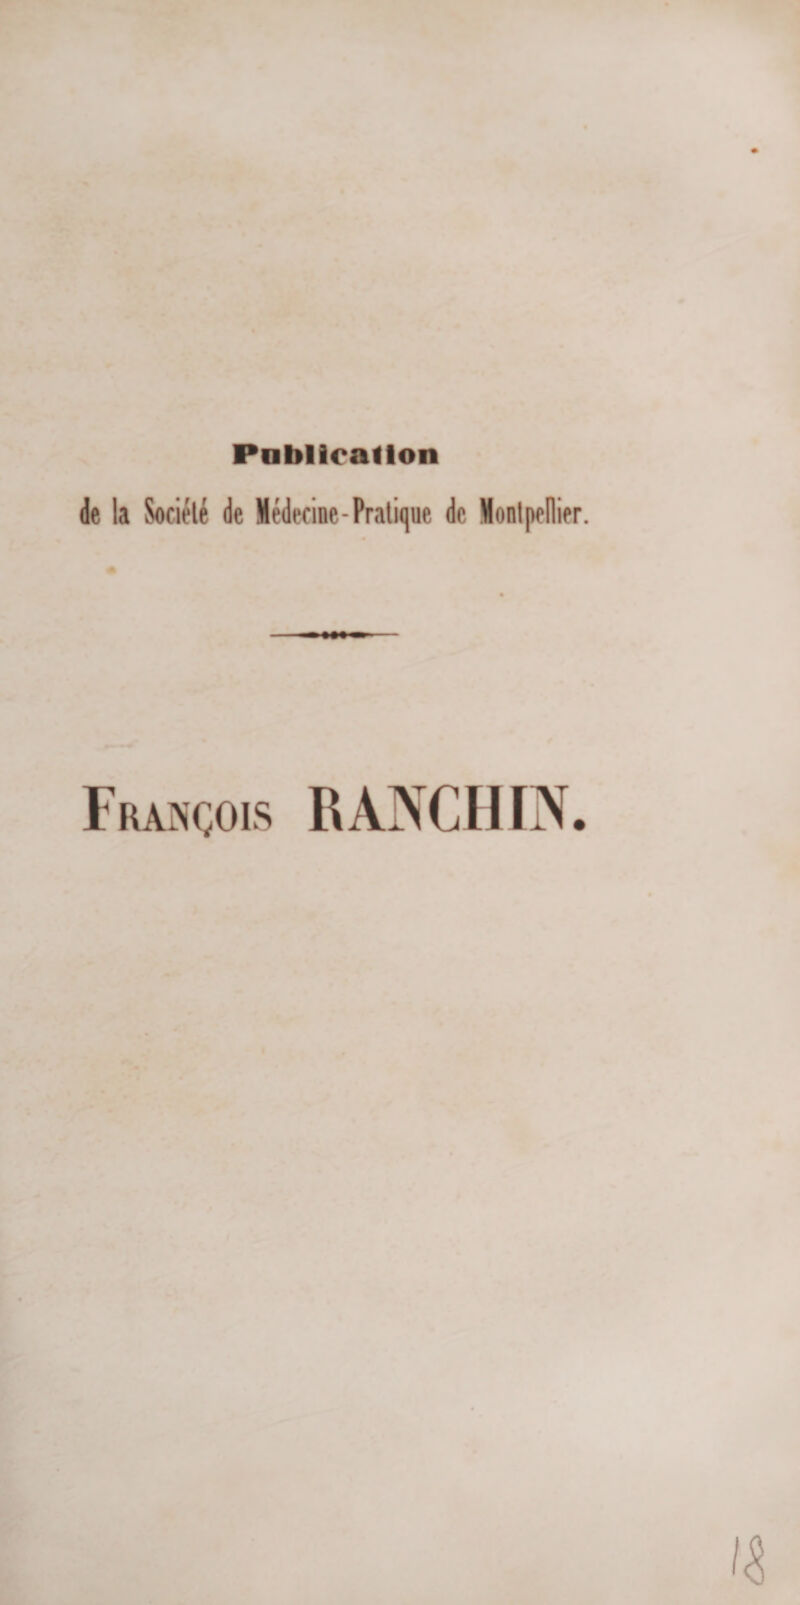 Publication de la Société de Médecine-Pratique de Montpellier. François RANCHIN